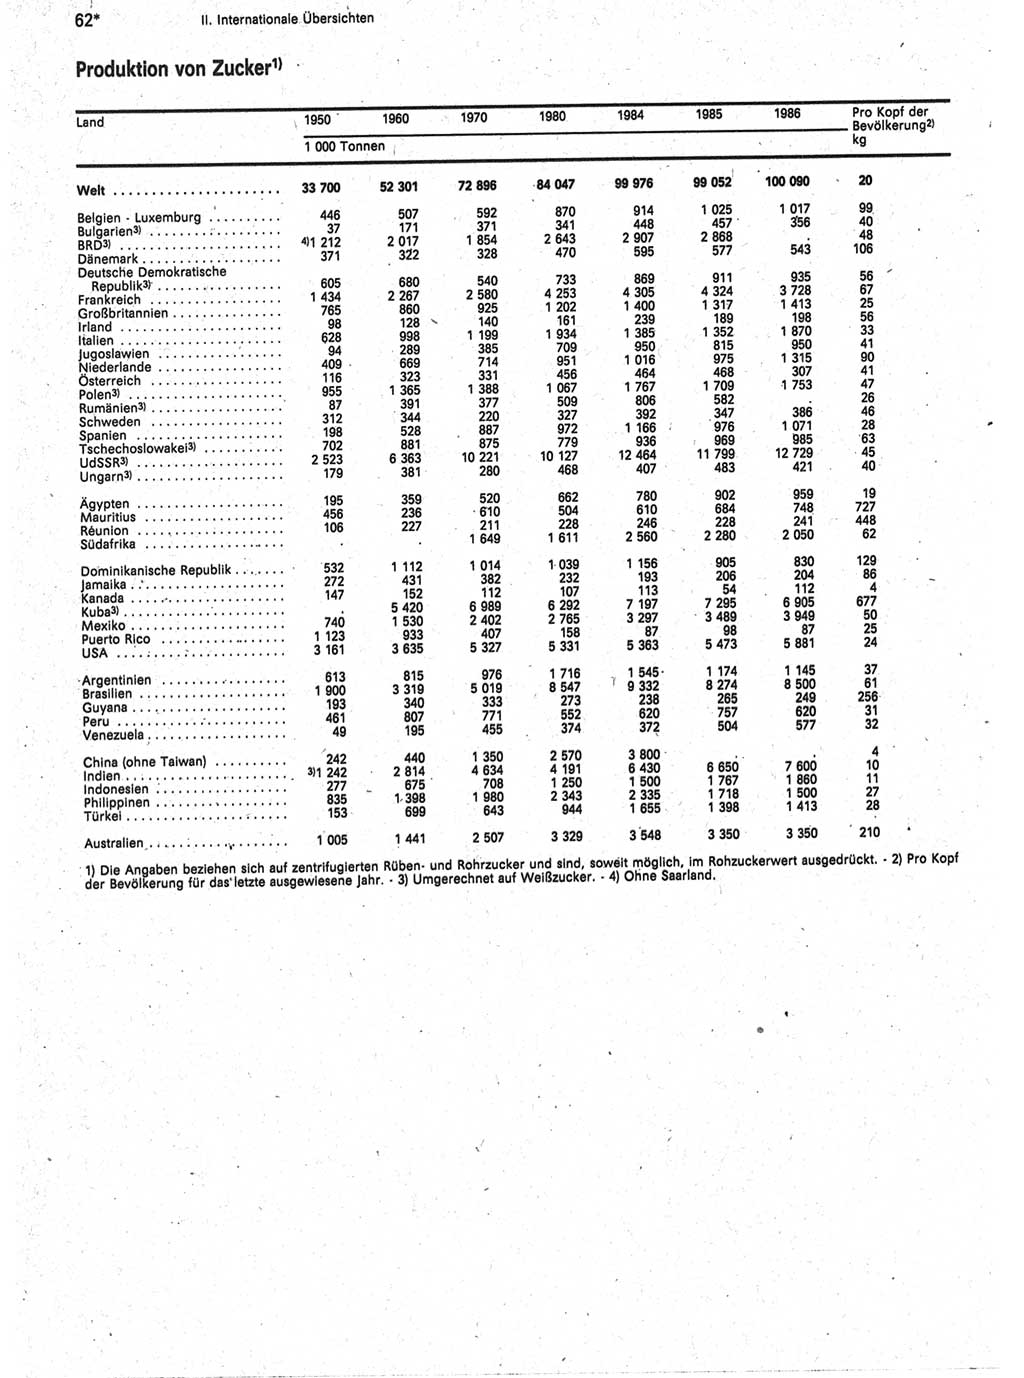 Statistisches Jahrbuch der Deutschen Demokratischen Republik (DDR) 1988, Seite 62 (Stat. Jb. DDR 1988, S. 62)